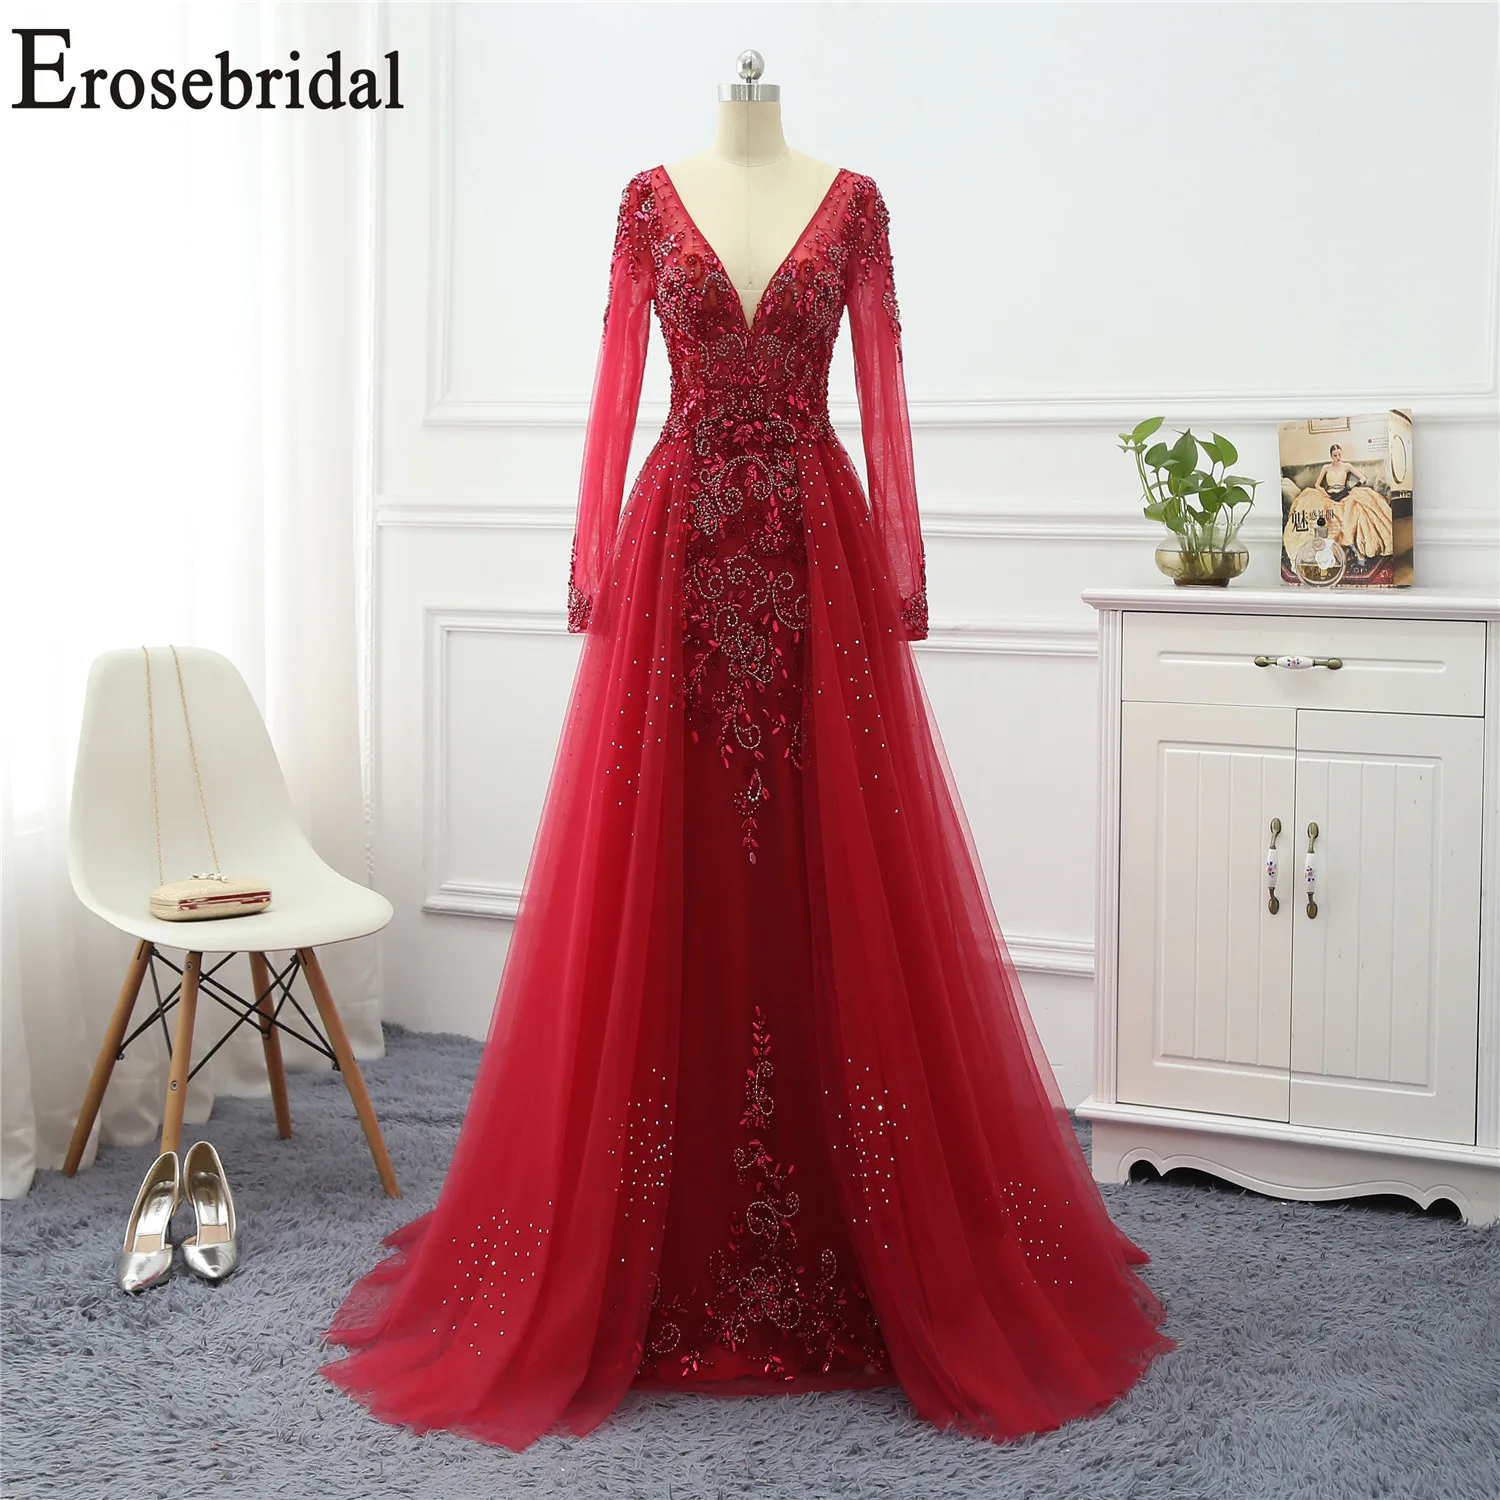 Erosebridal красное вечернее платье с длинным рукавом V образным вырезом Длинные вечерние платья вечернее платье/платье со шлейфом 5 цветов